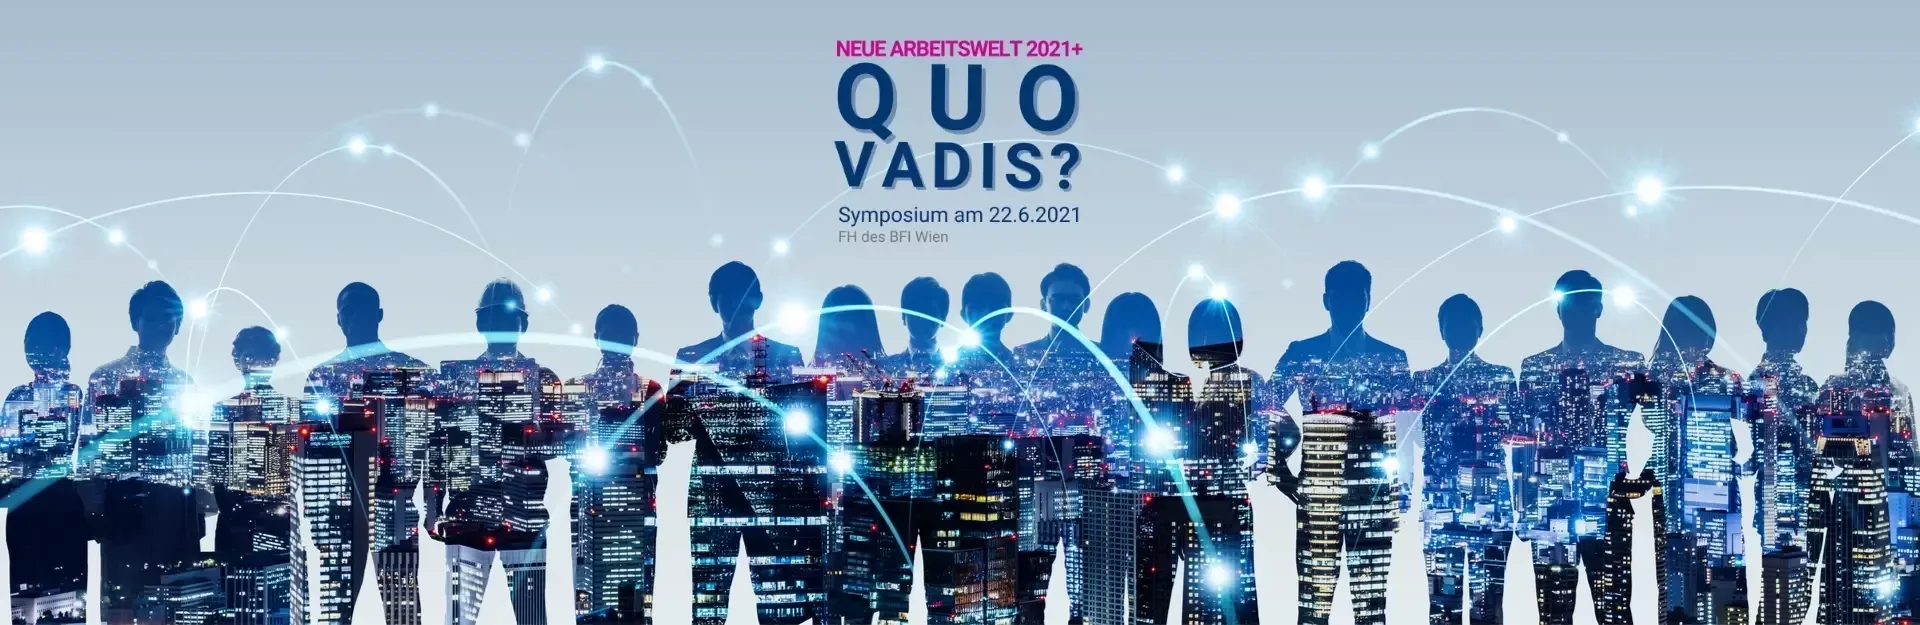 Symposium: Neue Arbeitswelt 2021+ Quo Vadis?